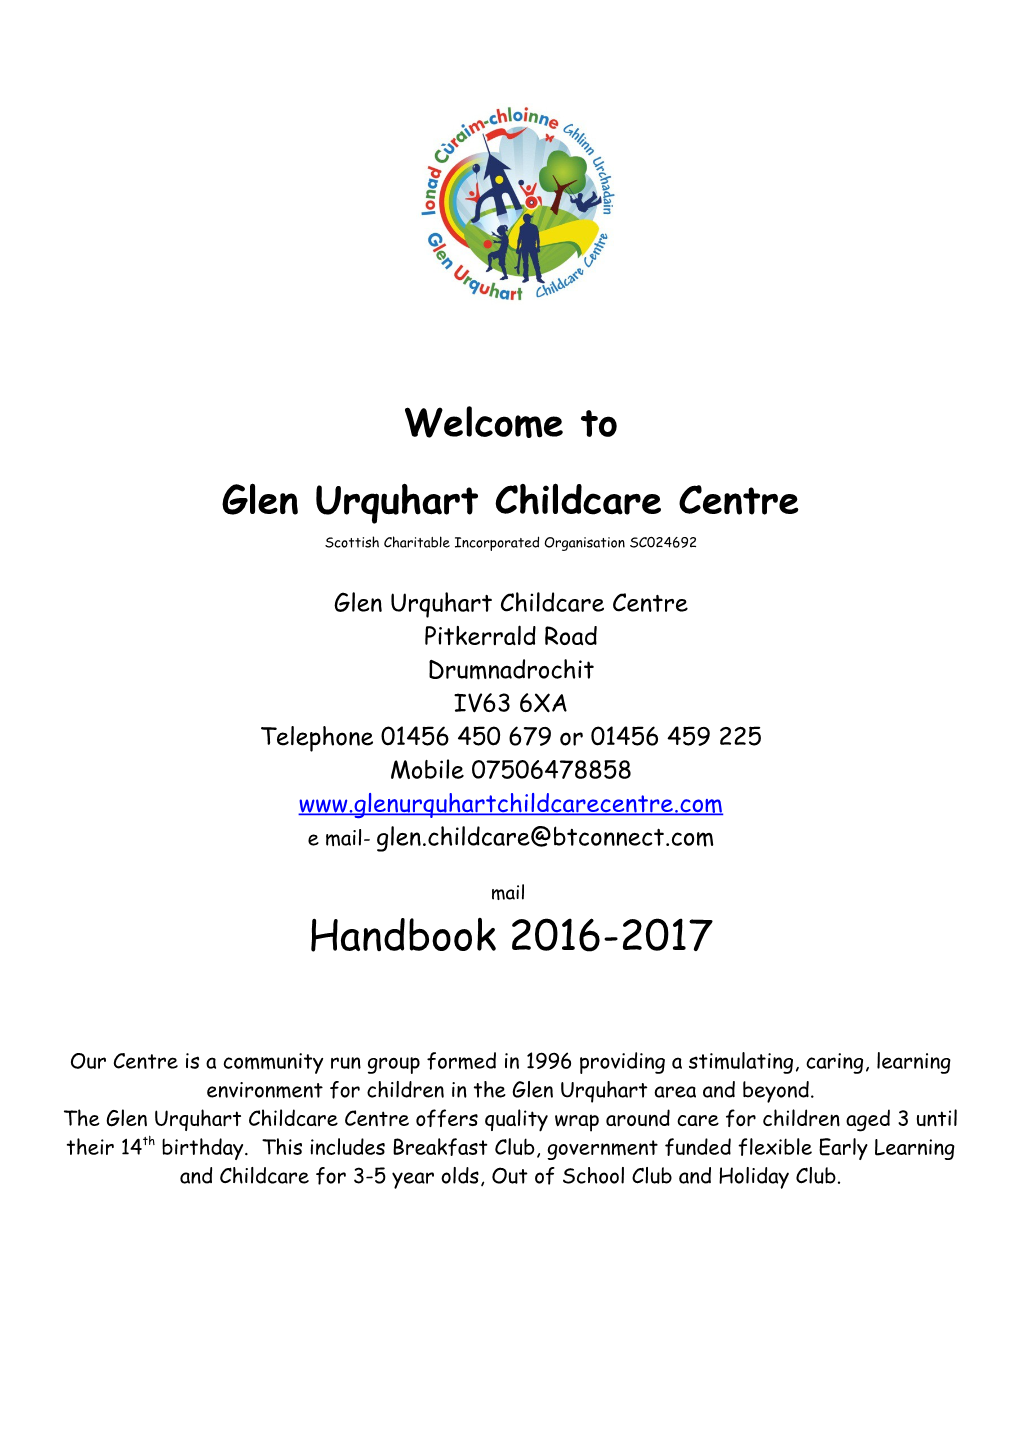 Glen Urquhart Childcare Centre